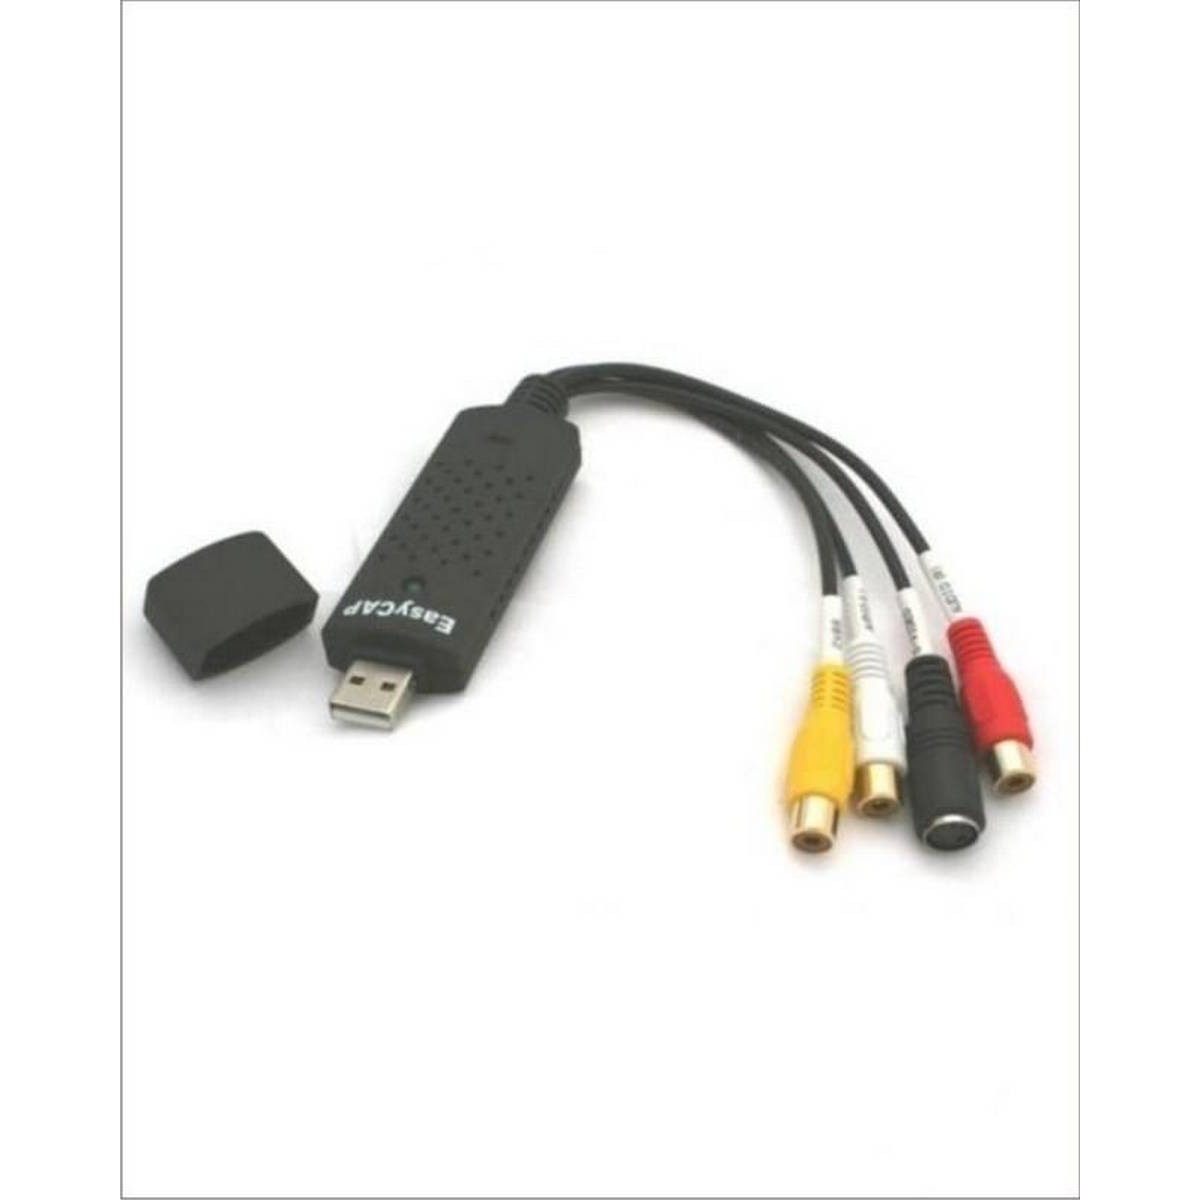 Переходник spdif. Кабель Micro USB-3rca (тюльпан). Переходник с юсб на колокольчики. EASYCAP%20USB%202.0/. Провод переходник колокольчики с юсб.